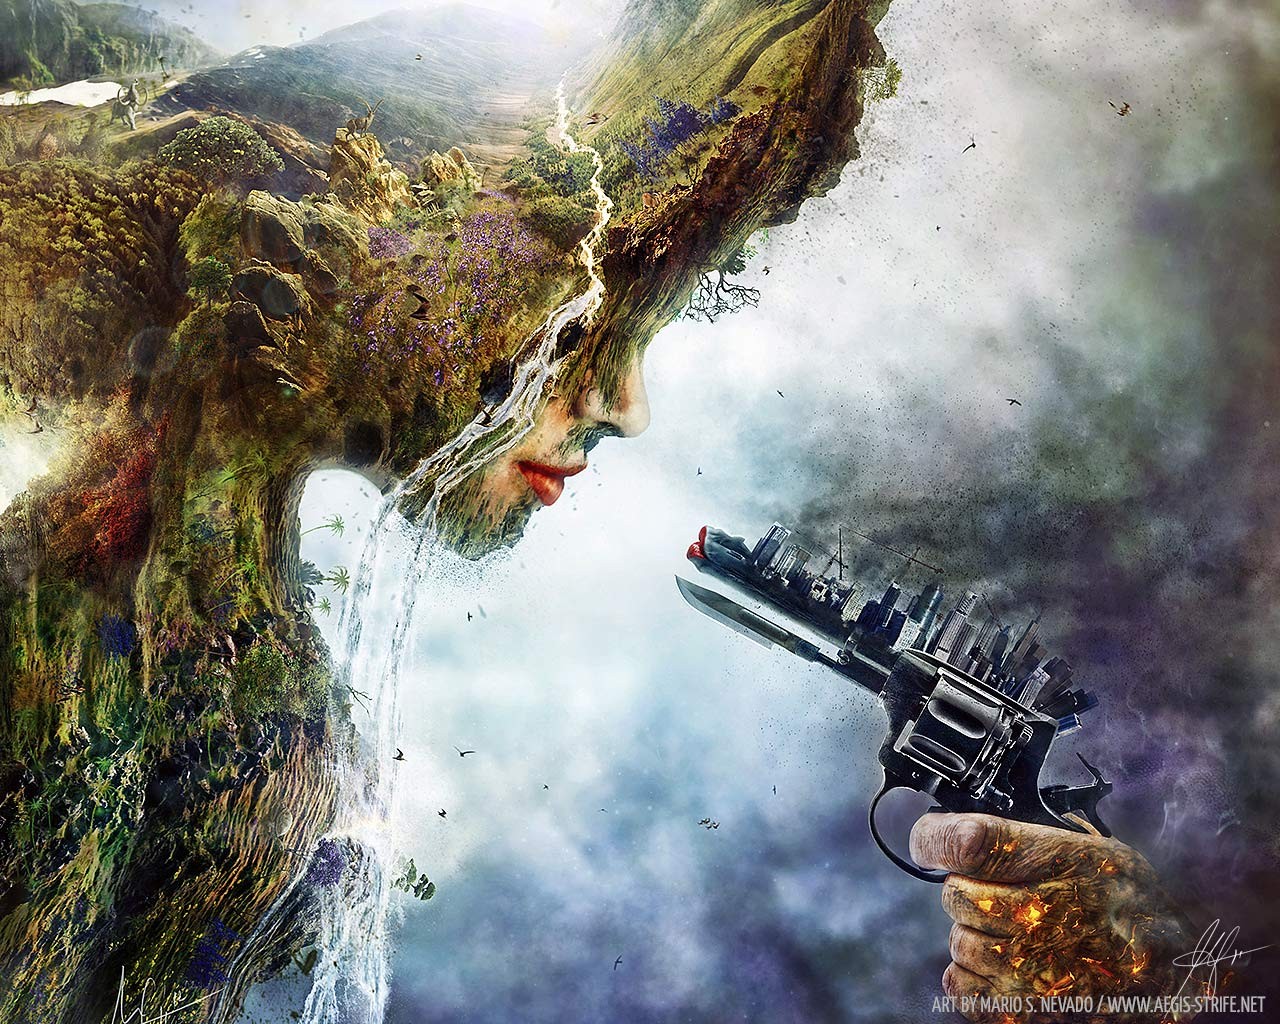 General 1280x1024 nature environment digital art artwork gun women face weapon ecology